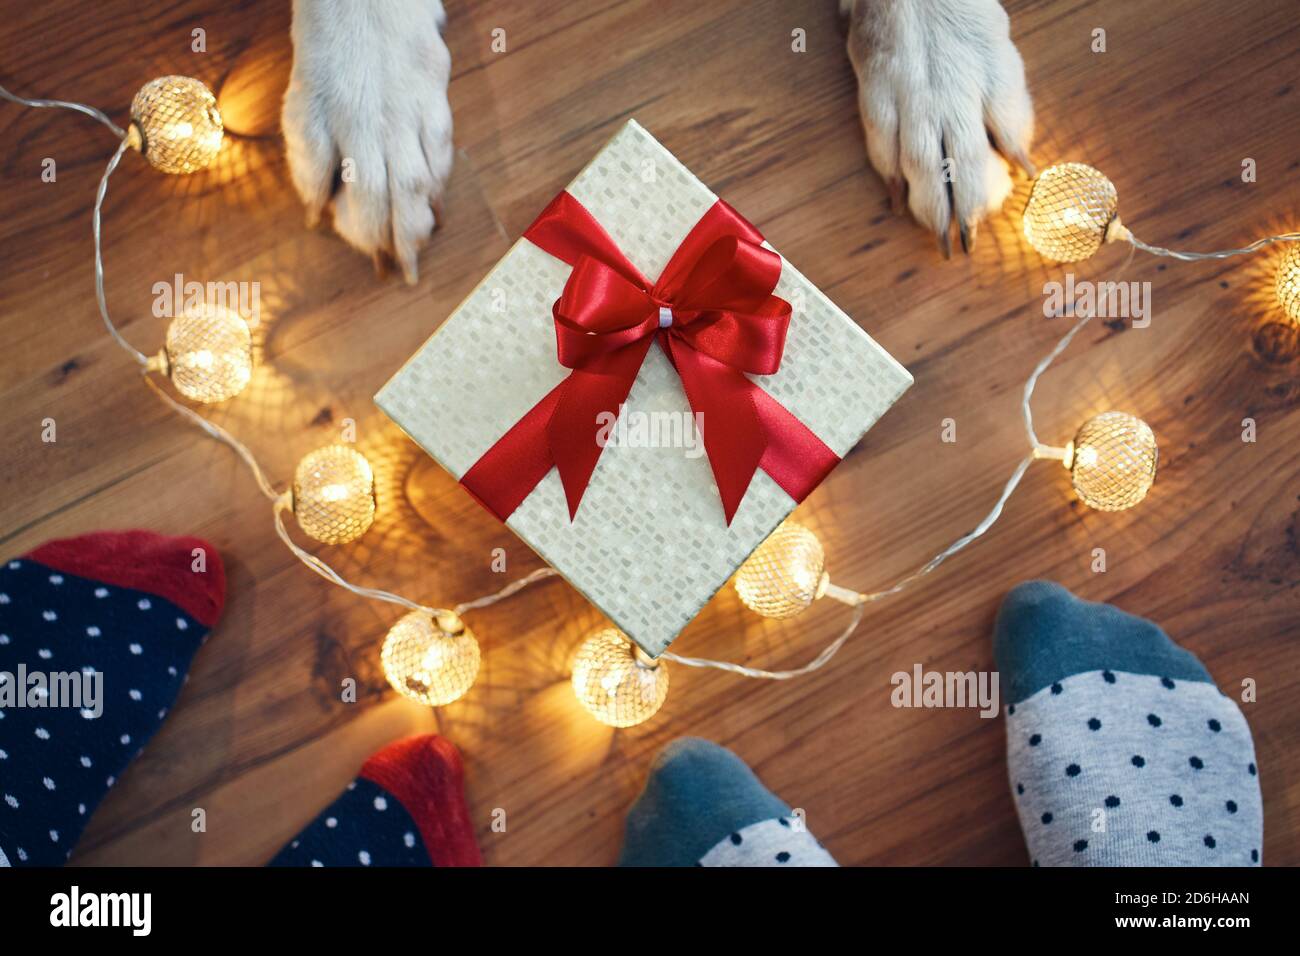 Celebración de vacaciones en casa. Familia con perro alrededor de regalo de Navidad. Foto de stock